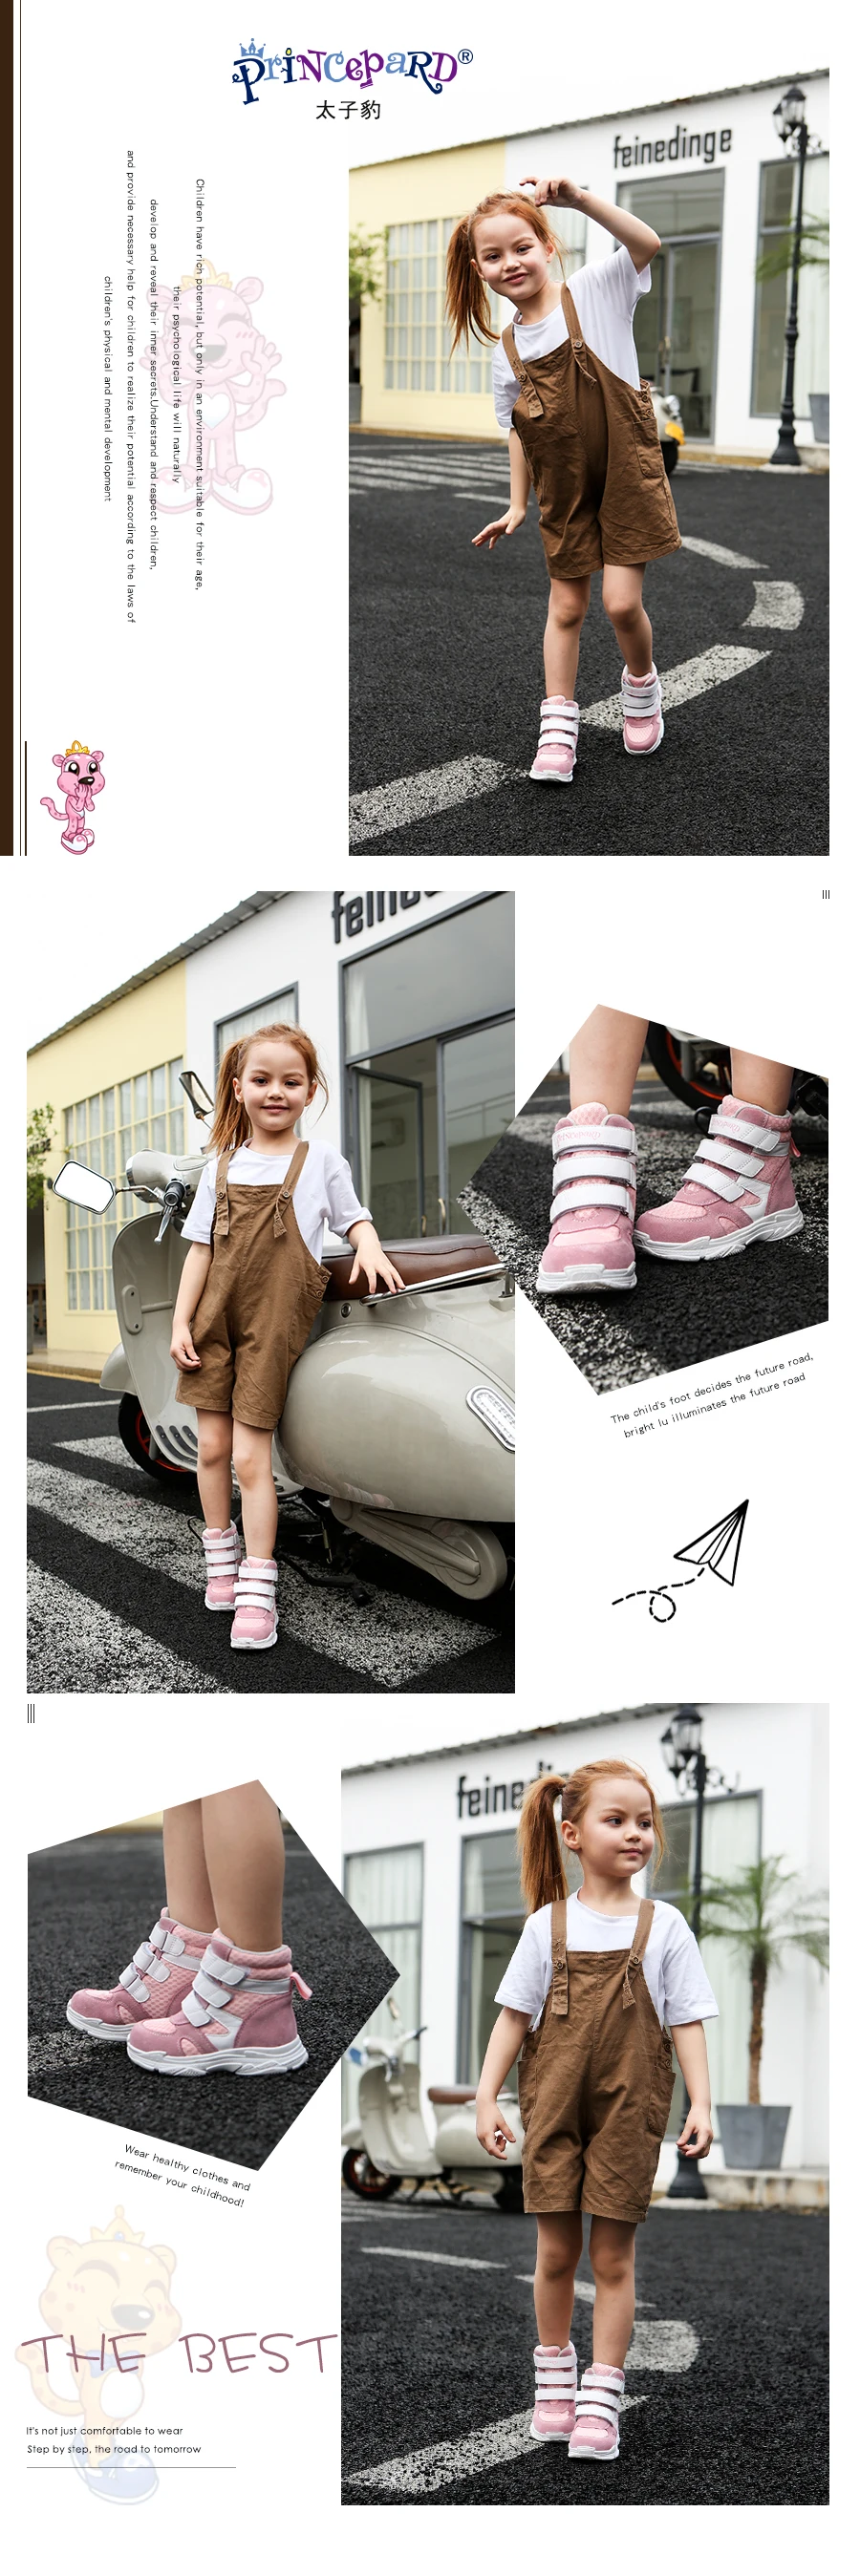 Princepard Весенняя ортопедическая обувь для детей, розовая спортивная обувь с сетчатой подкладкой, оснащенная профессиональными ортопедическими стельками